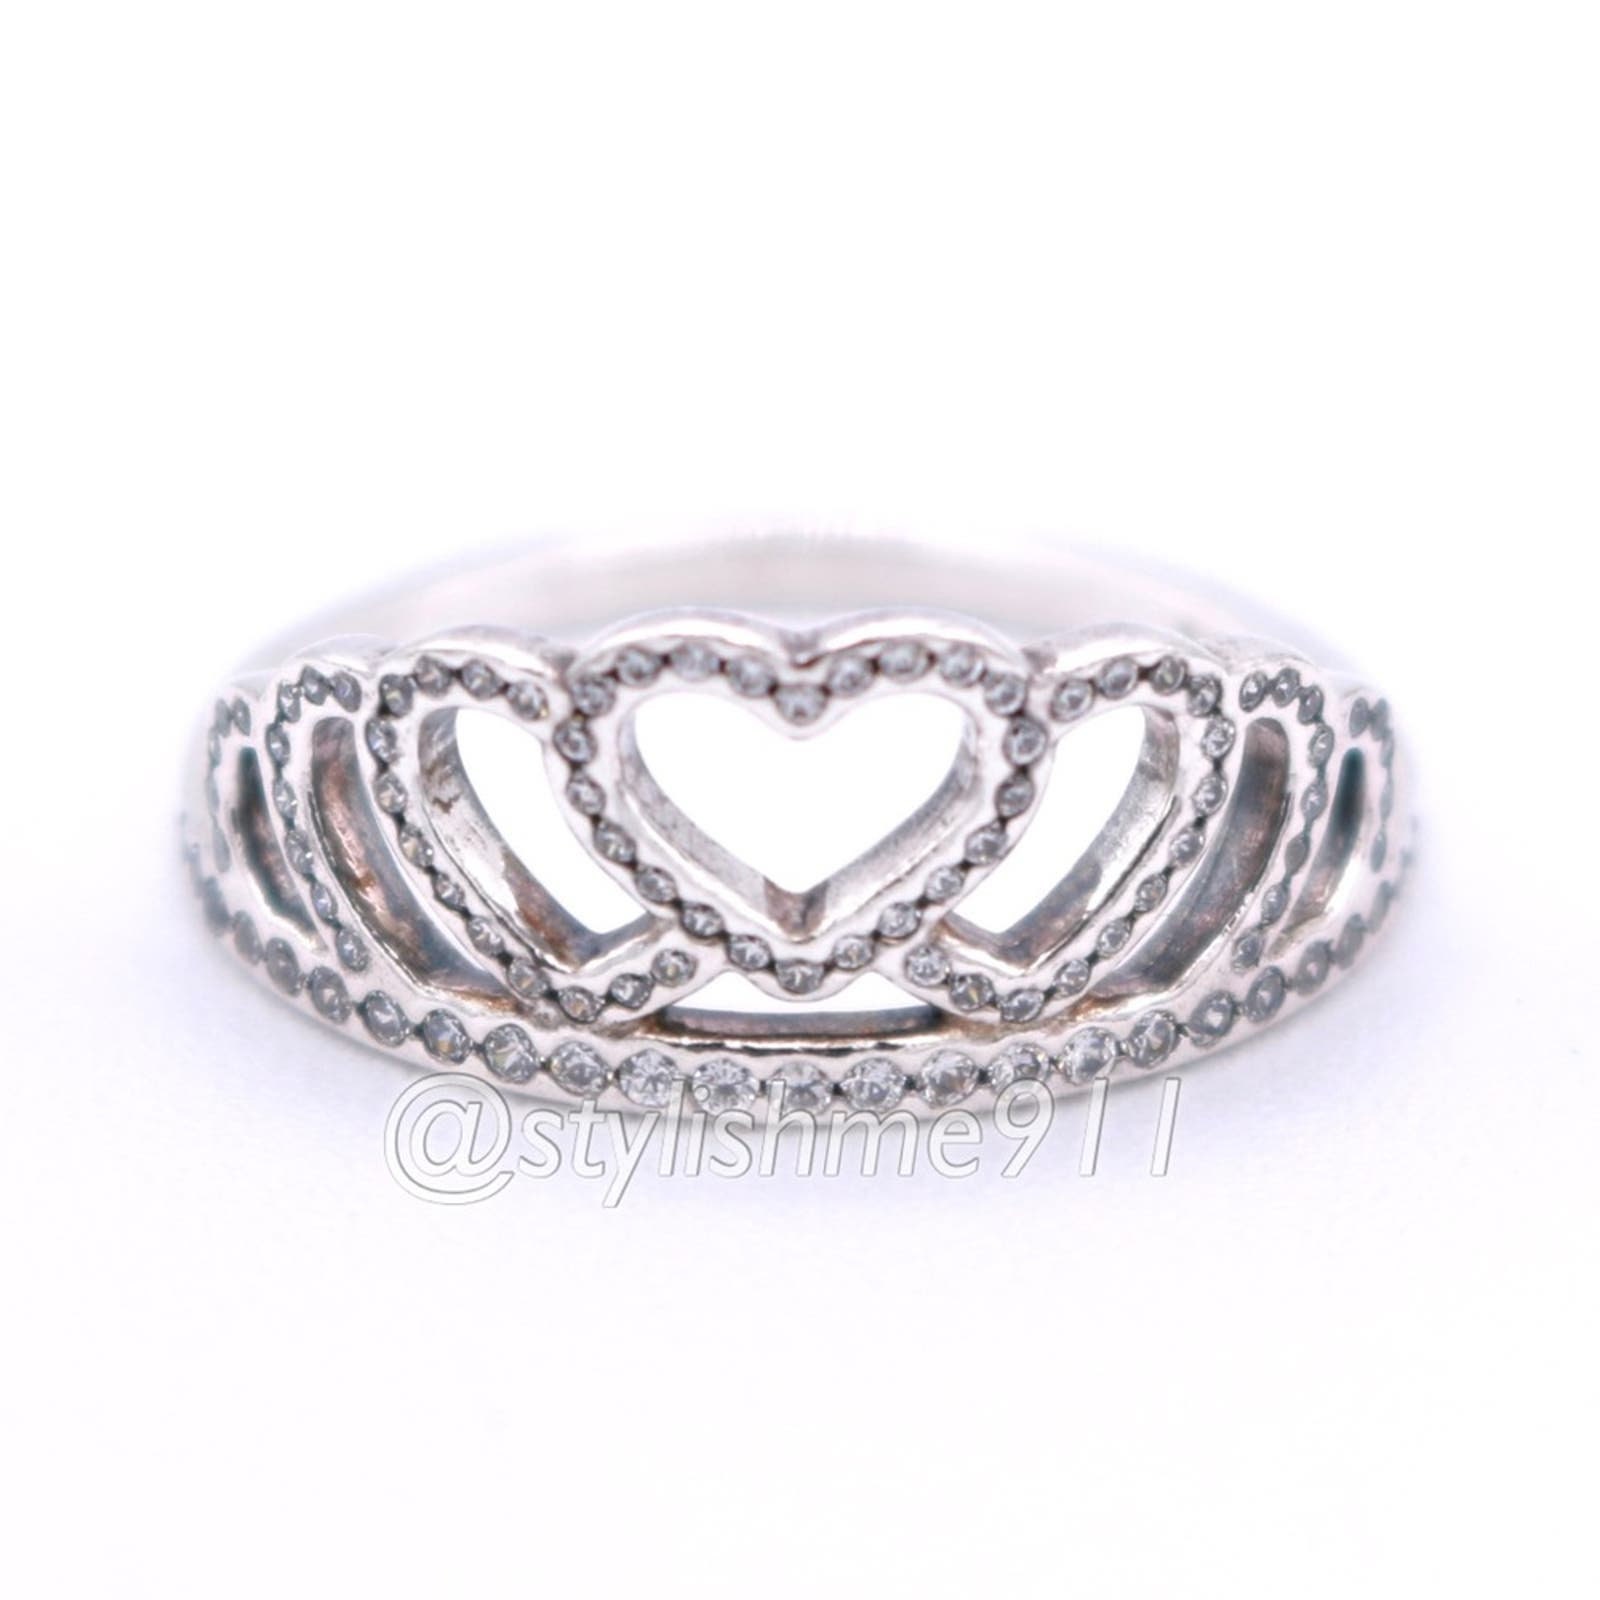 Pandora Princess Tiara Crown Ring – Pancharmbracelets